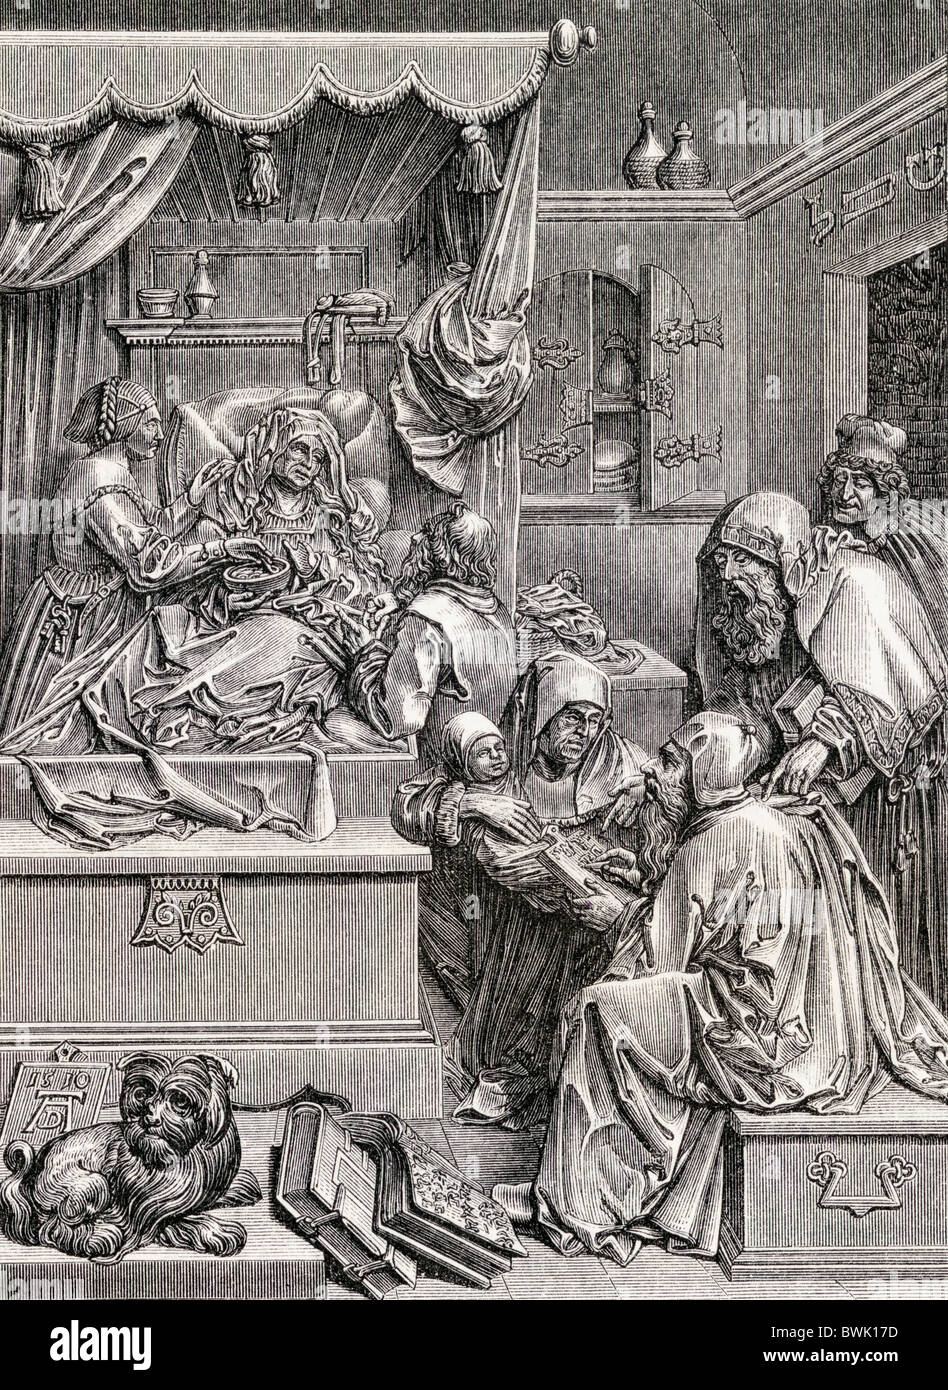 Haut Relief sculpture par Albrecht durer de la naissance de Saint John. 16e siècle. Banque D'Images